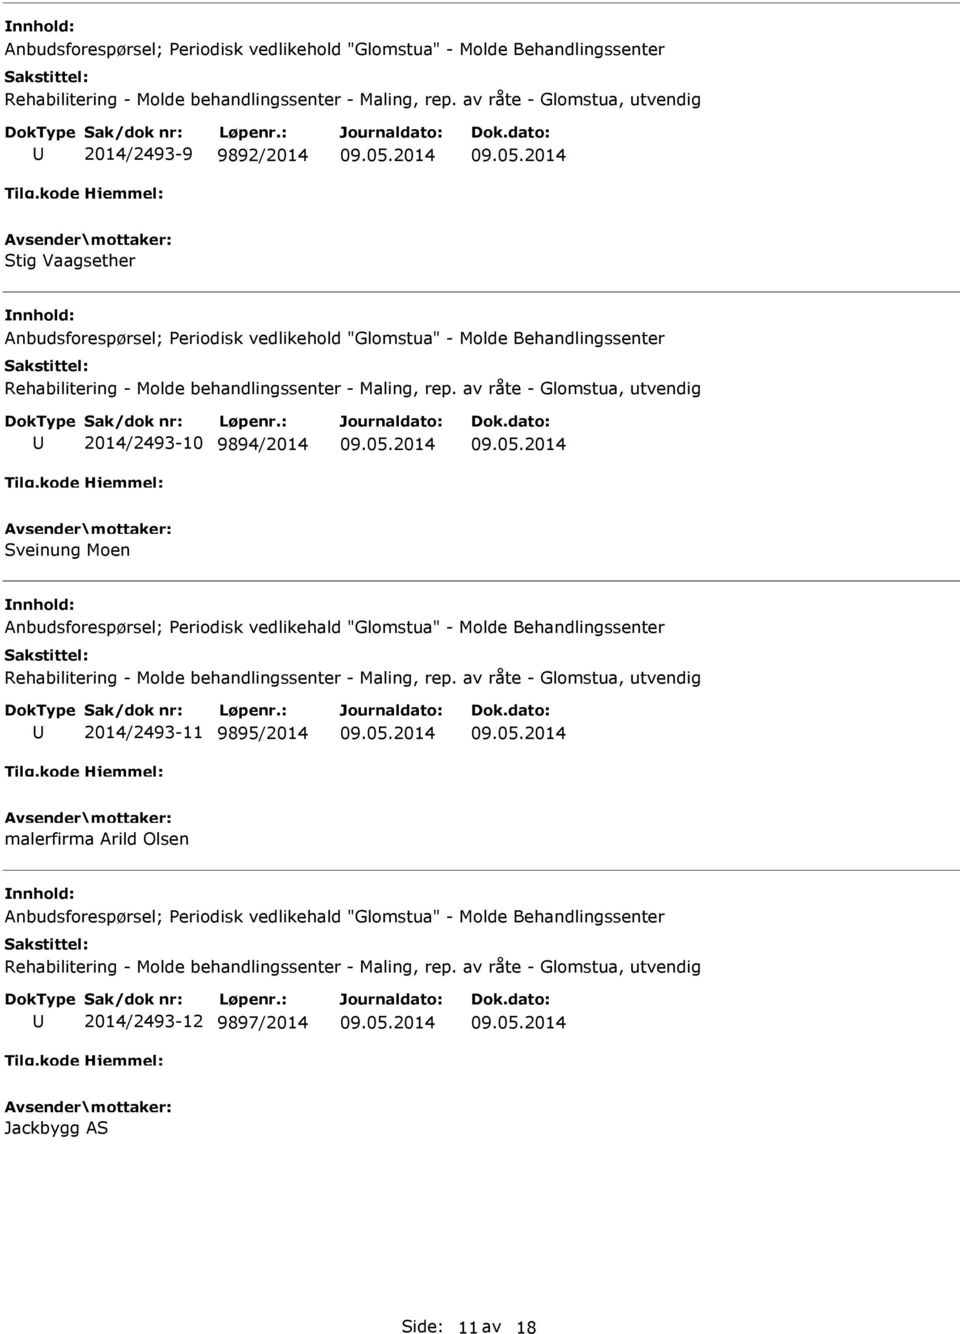 Anbudsforespørsel; Periodisk vedlikehald "Glomstua" - Molde Behandlingssenter 2014/2493-11 9895/2014 malerfirma Arild